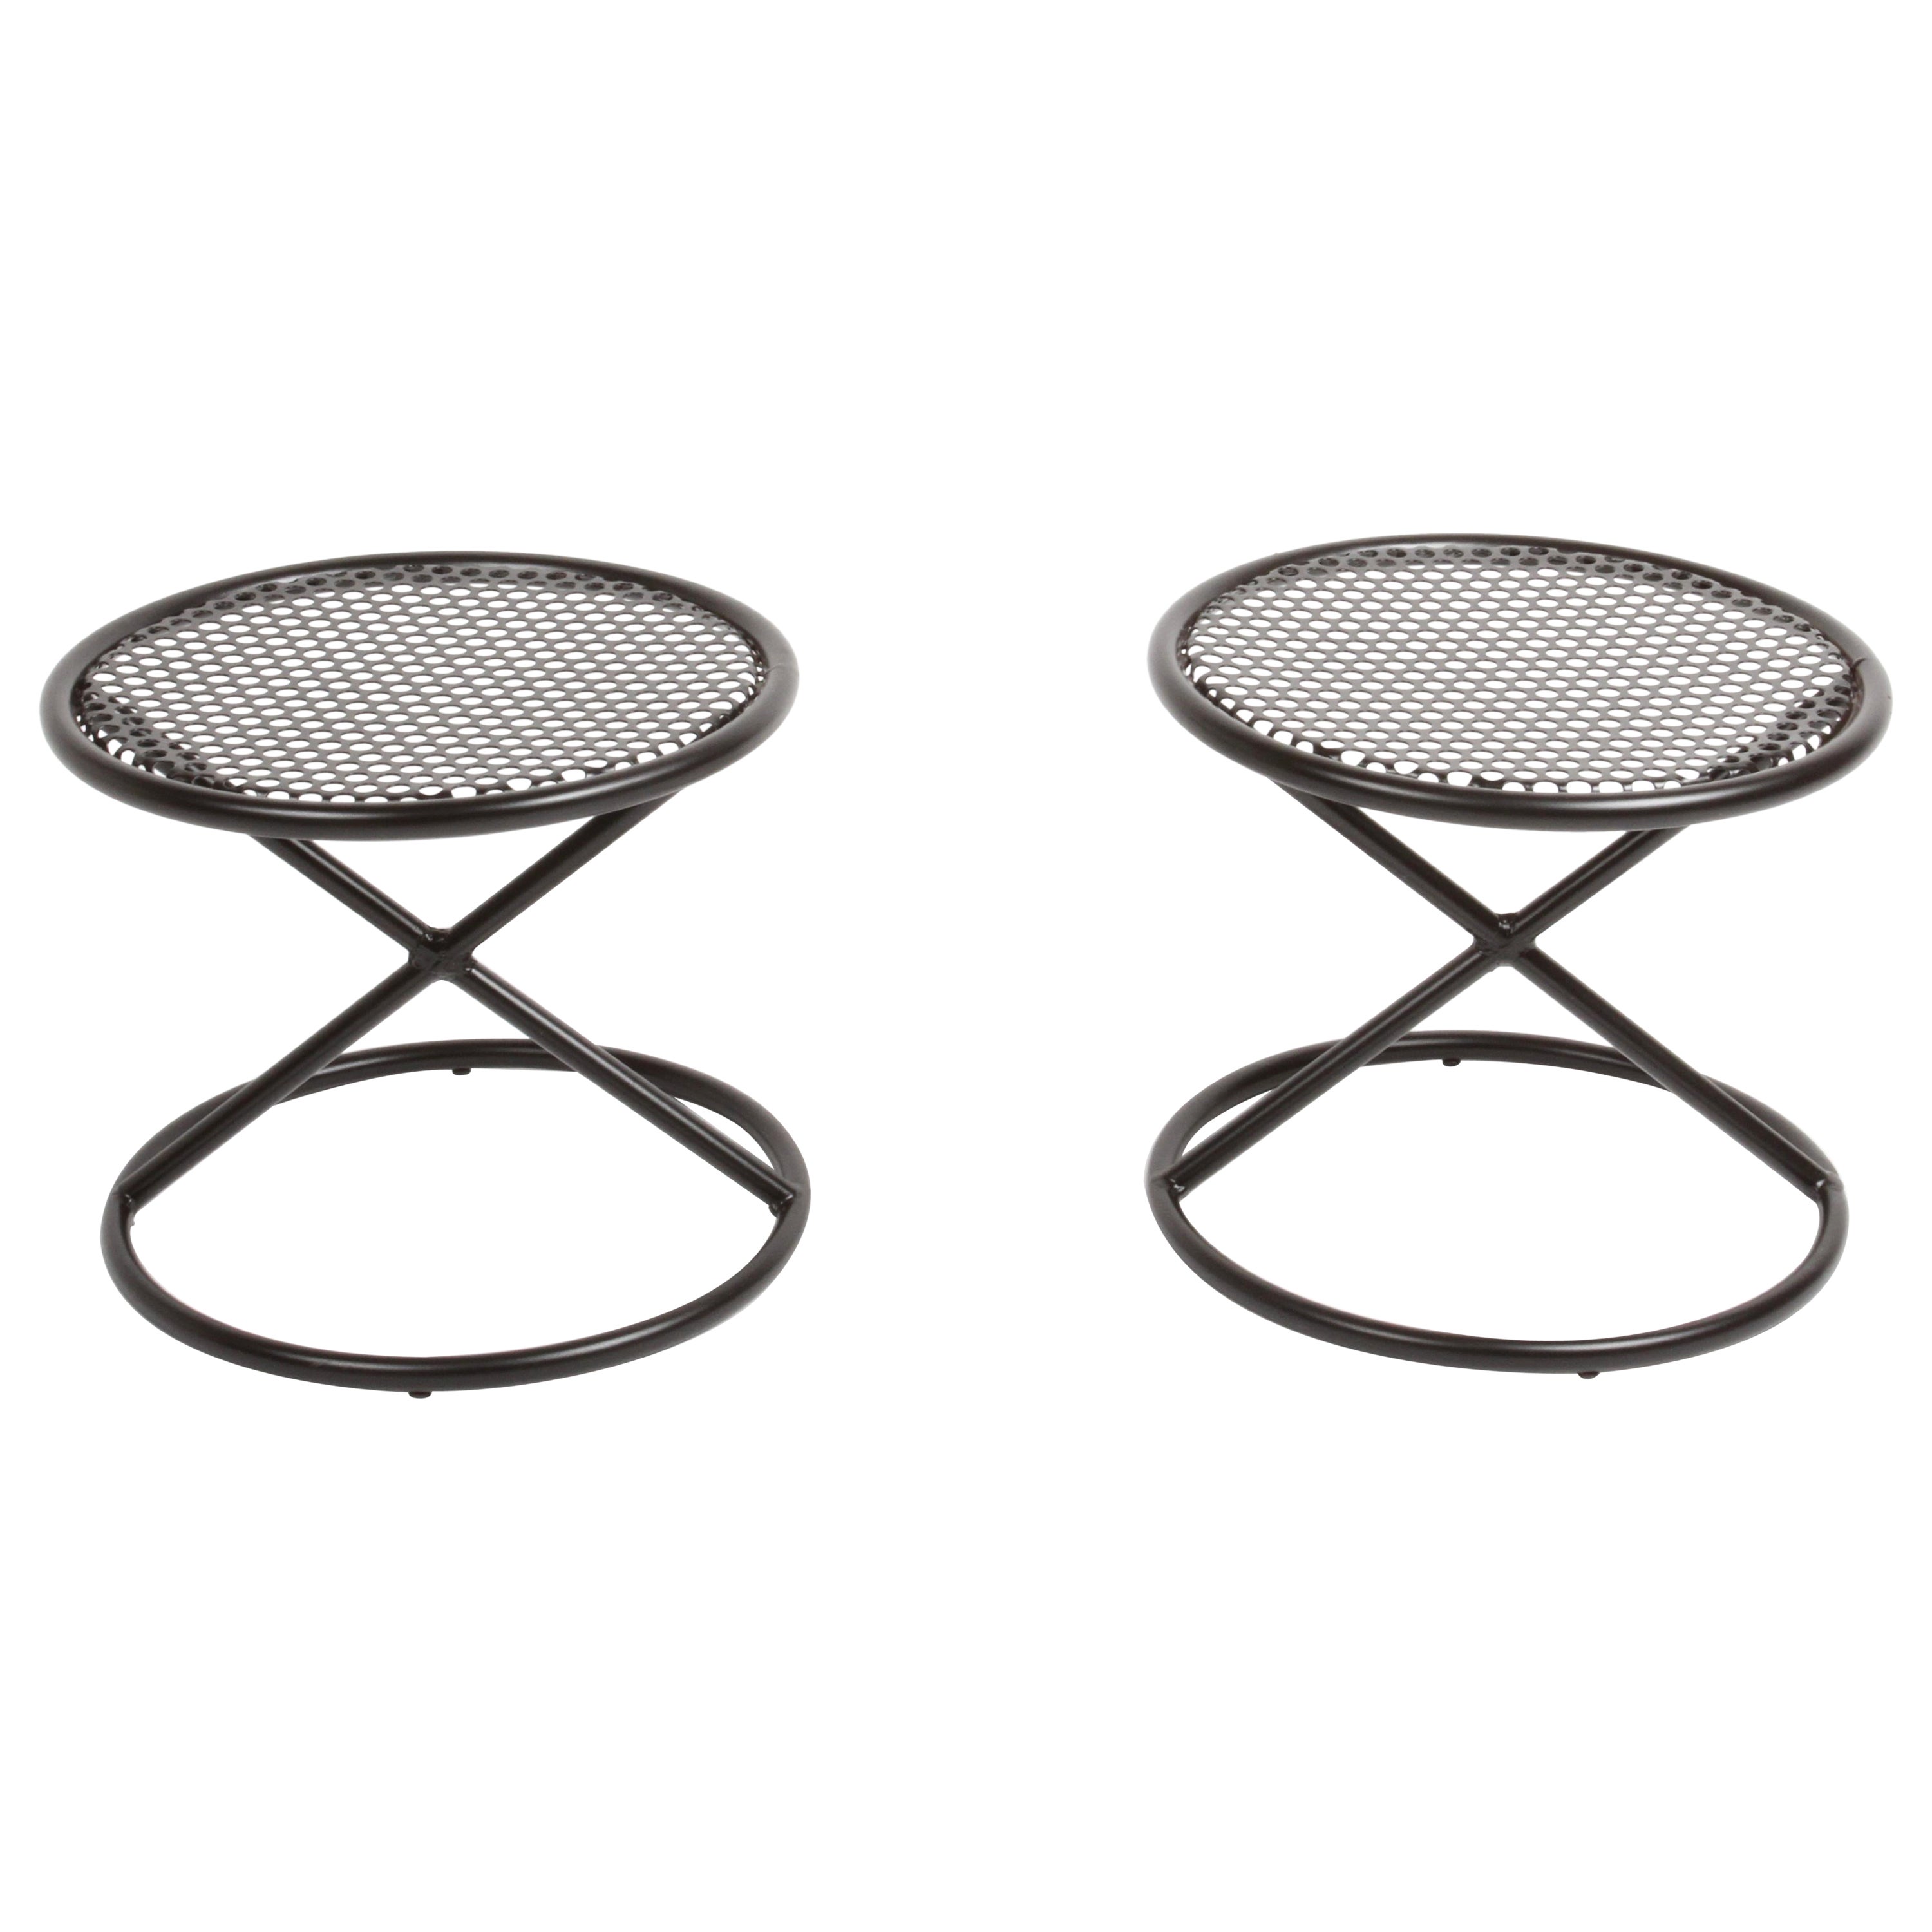 Tables d'appoint rondes de style Mathieu Matégot avec plateaux perforés et supports en X